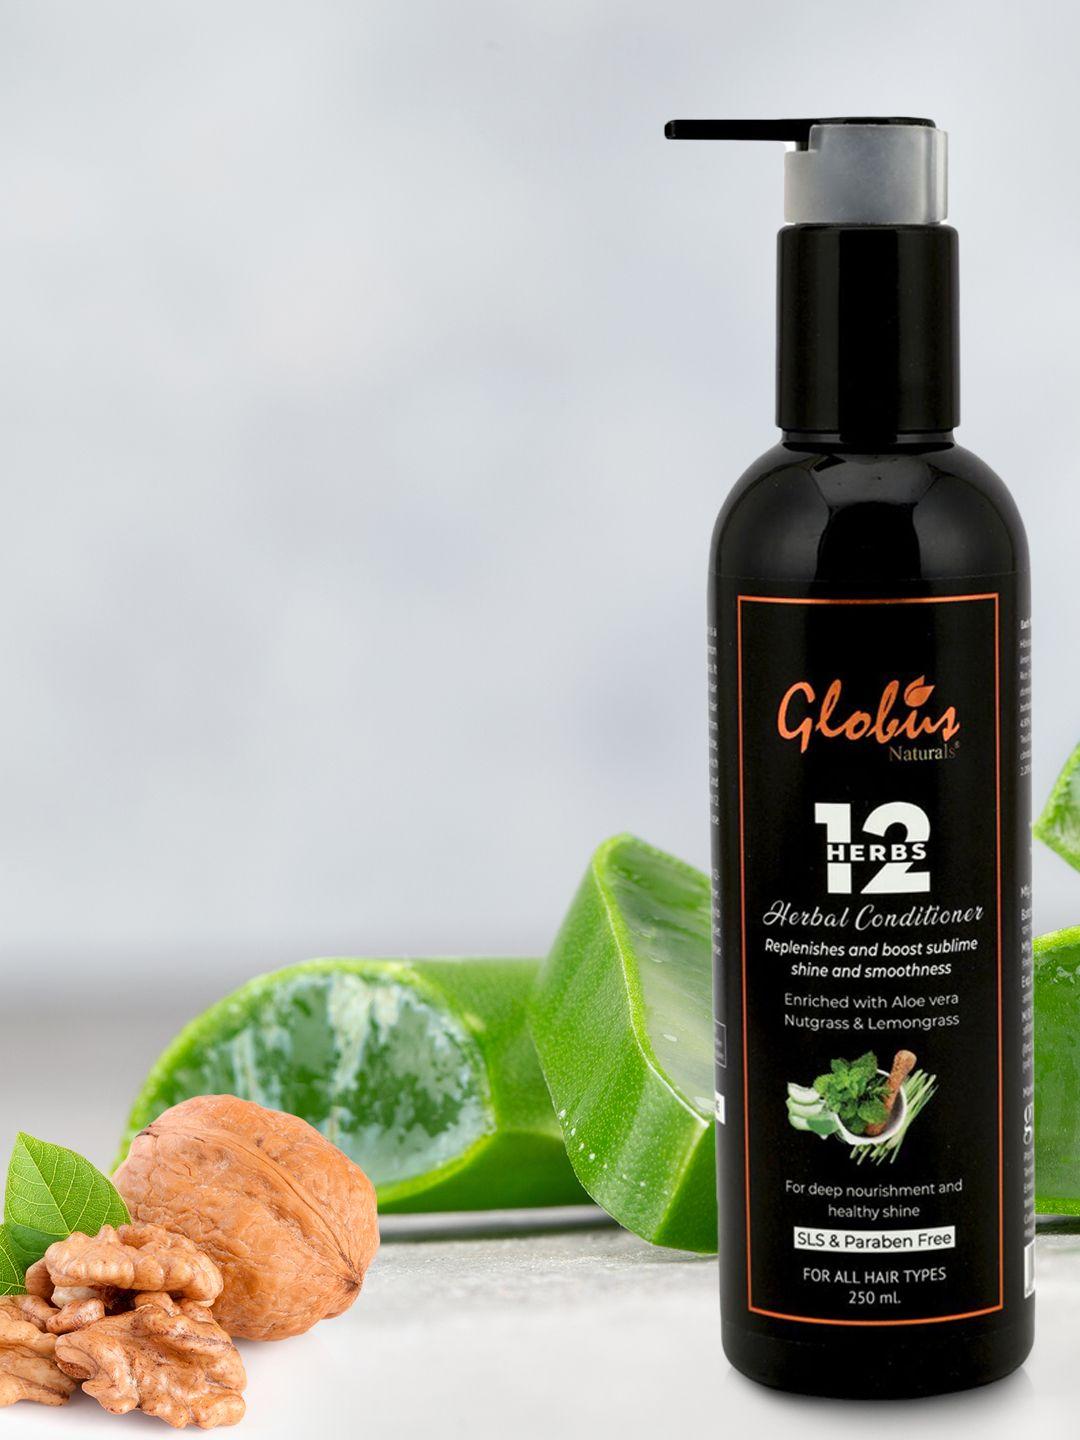 globus naturals 12 herbs hair growth shampoo 250 ml